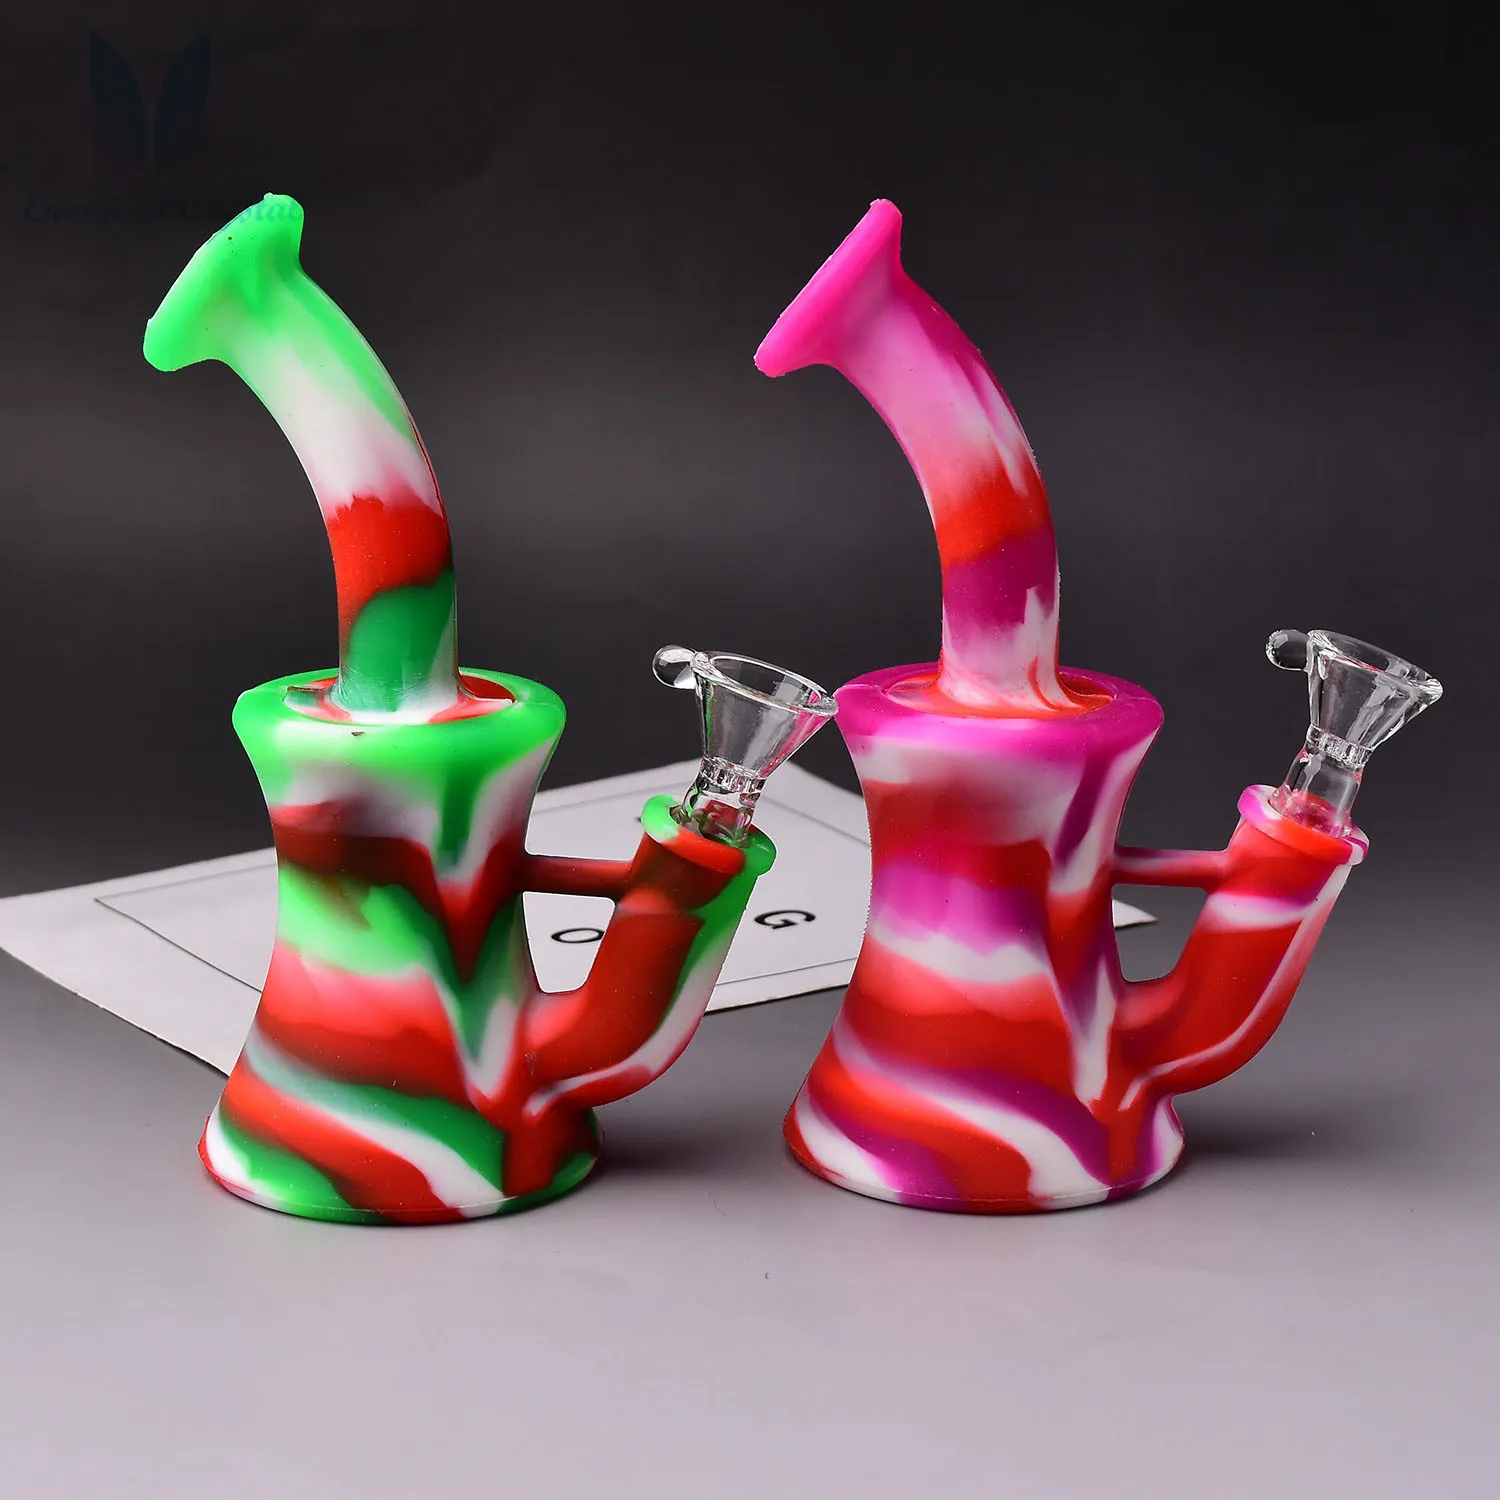 Pipa ad acqua per fumatori con narghilè da collezione, gelato arcobaleno, US $ 21,99